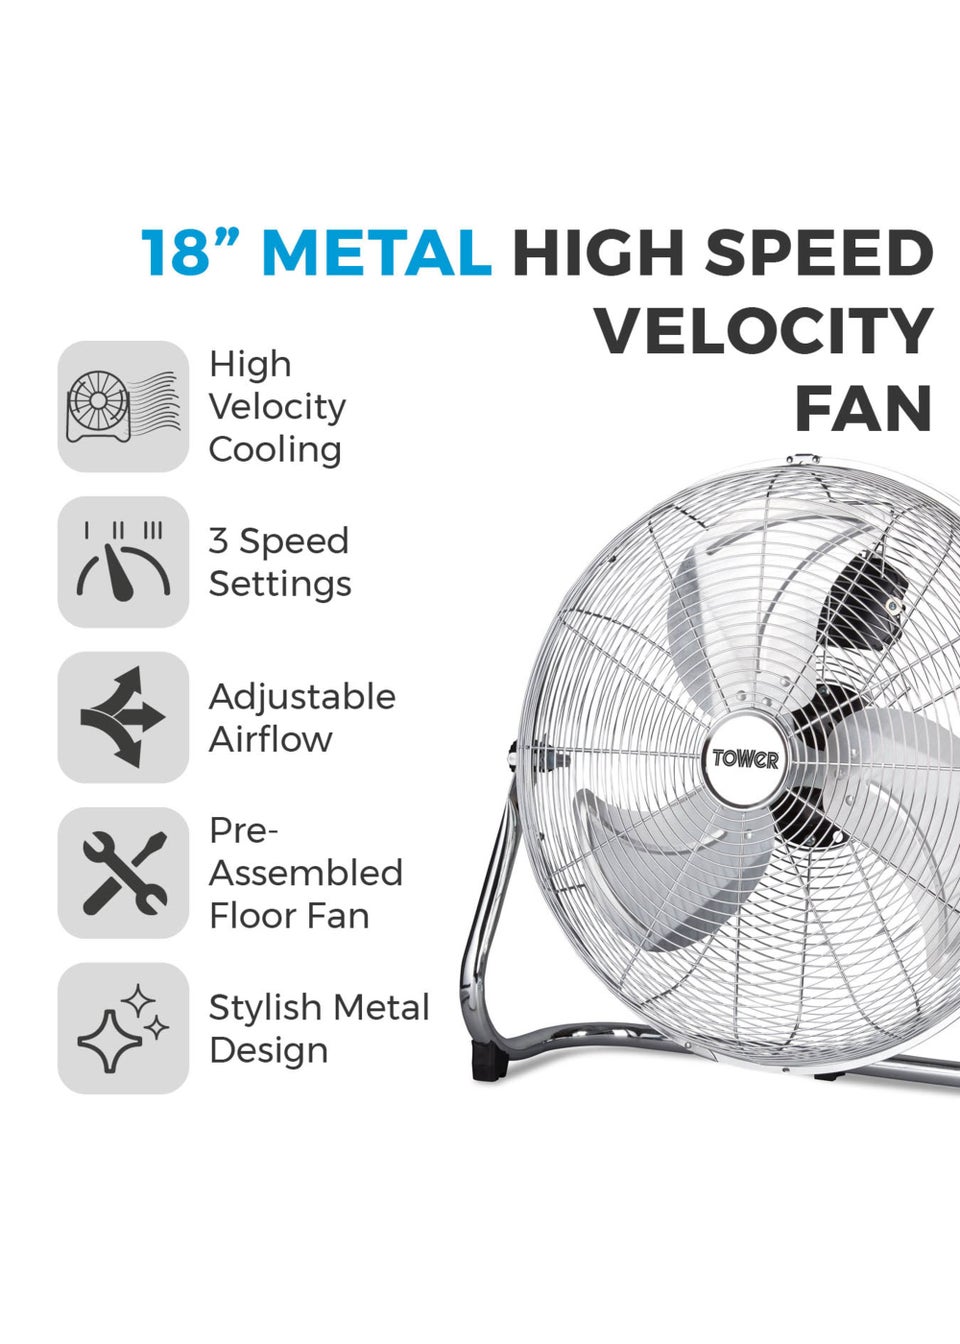 18 Inch Velocity Fan